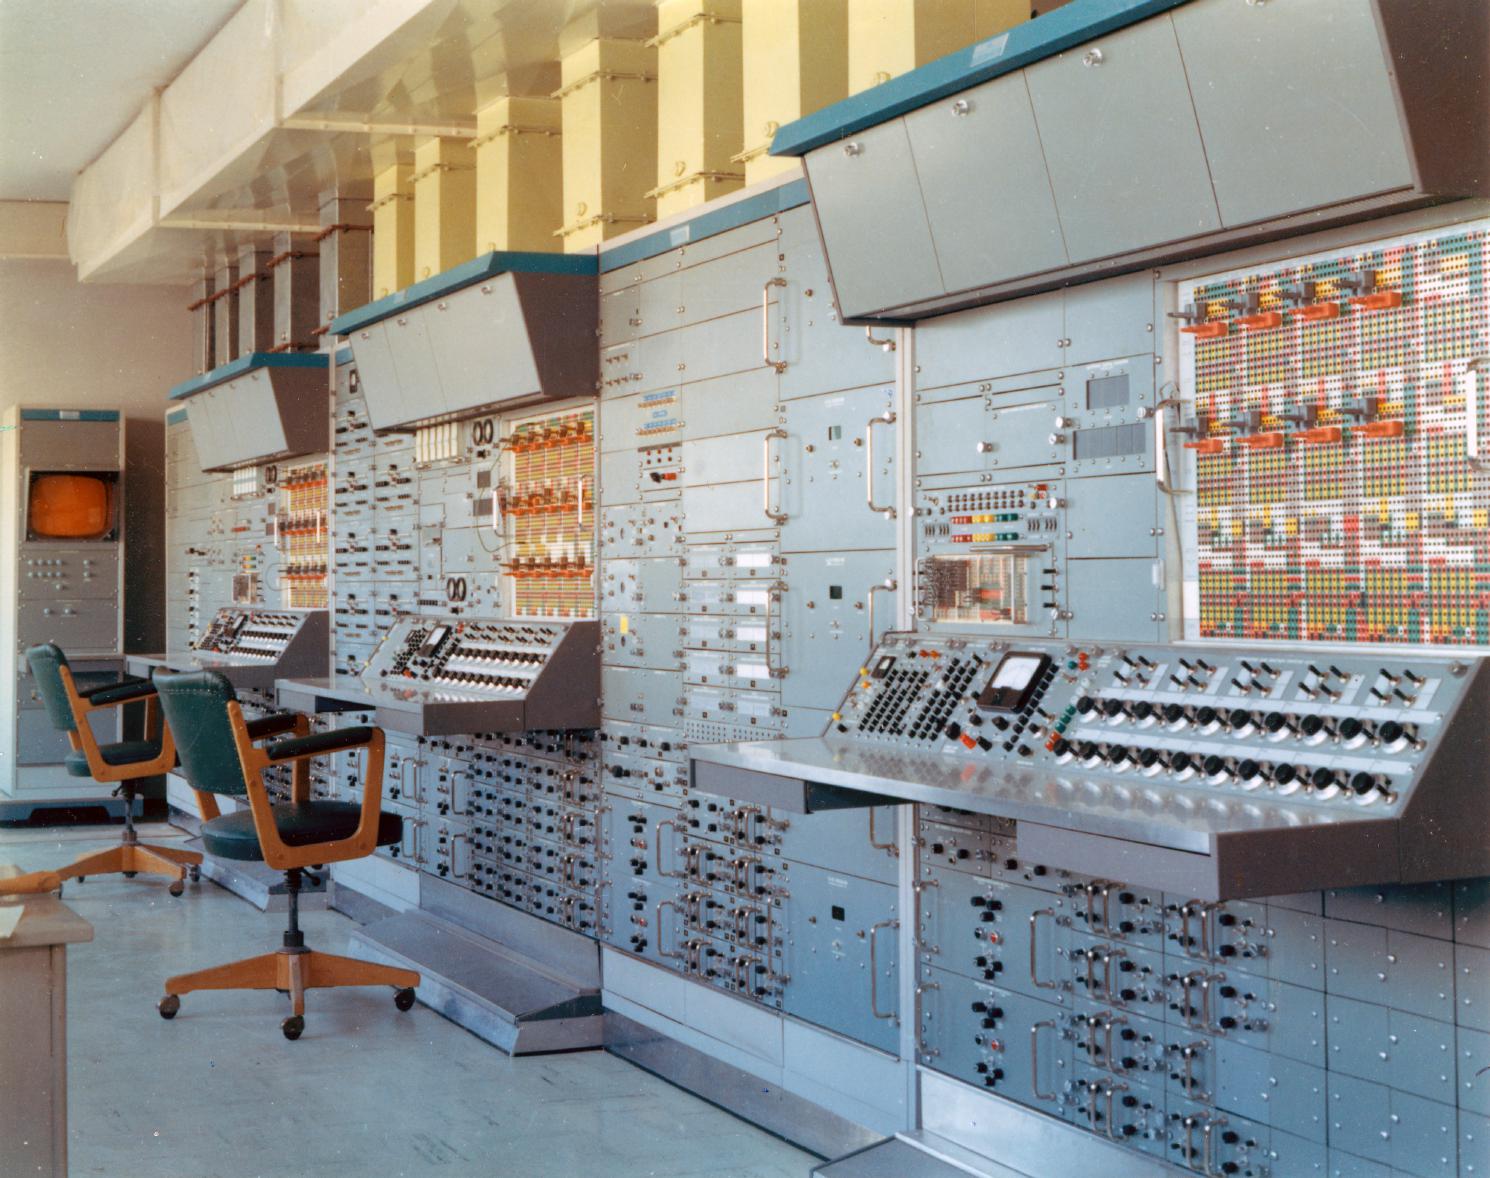 EAI analog computer installation at the Deutsches Zentrum für Luft- und Raumfahrt.